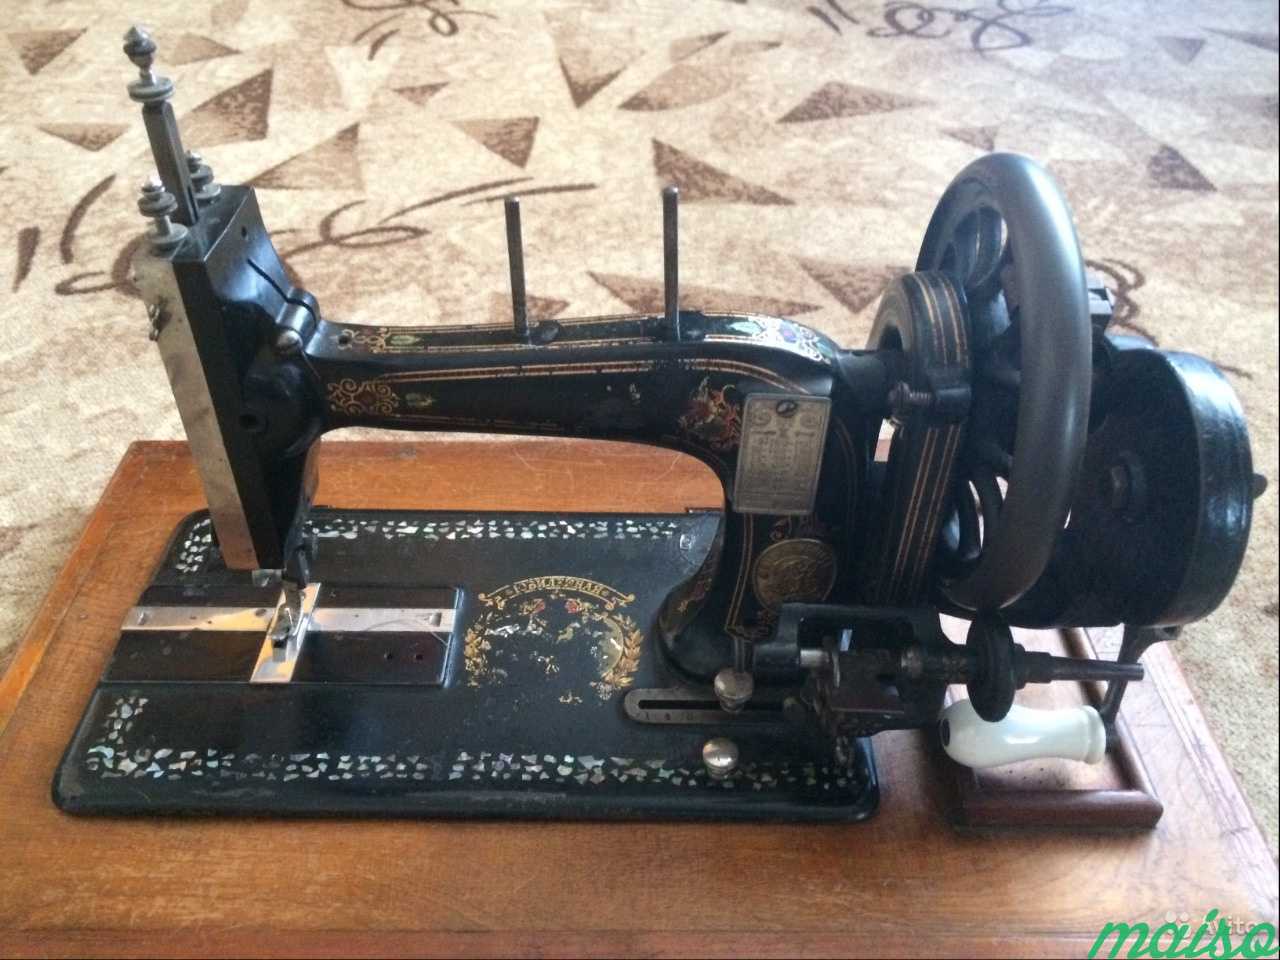 Машинка зингер отзывы. Реставрация швейной машины Зингер. Singer r 8887471. Купить челнок на швейную машинку Зингер 17-1.